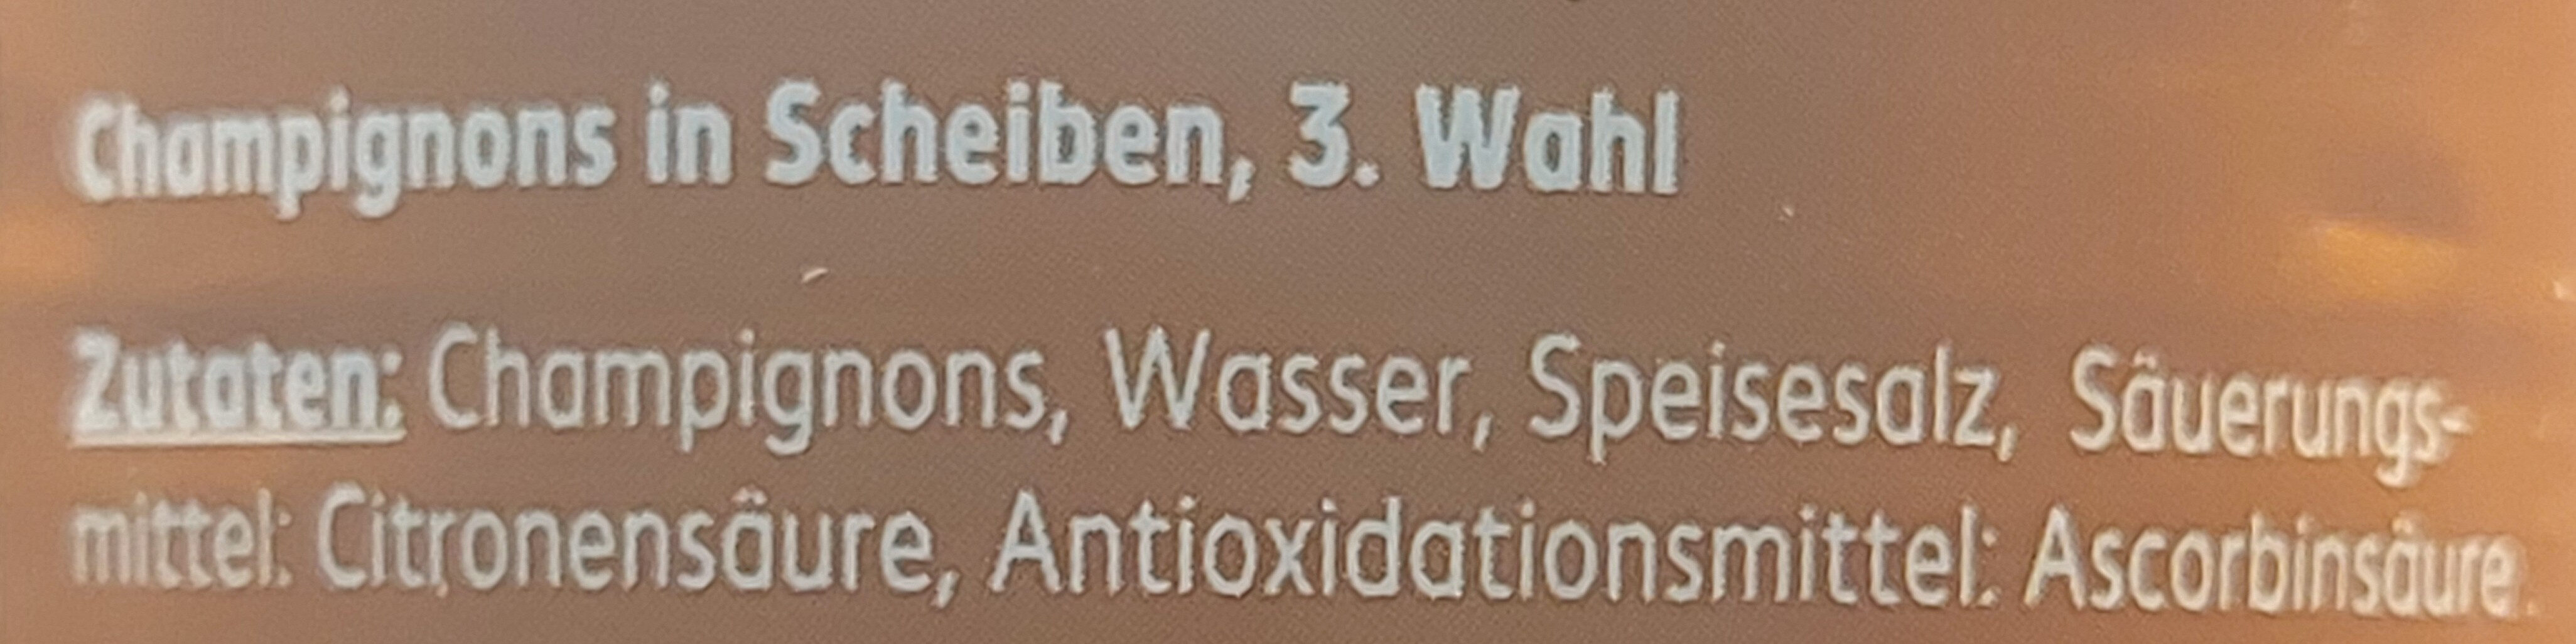 Champignons in Scheiben 3. Wahl - Ingredients - de